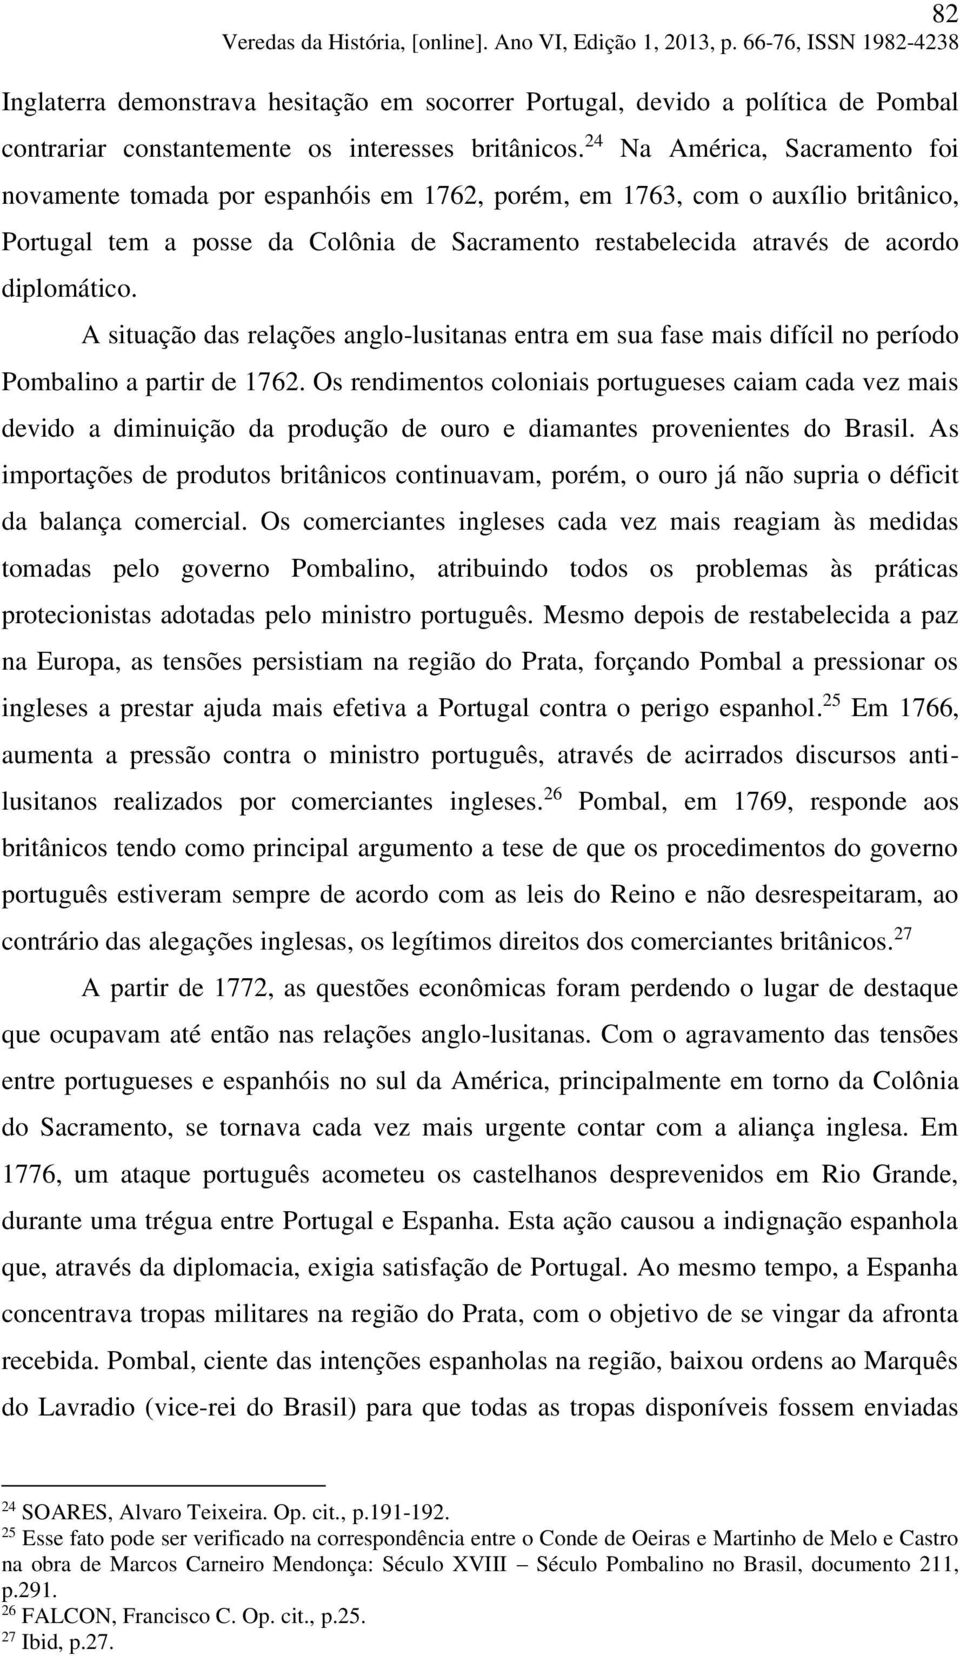 diplomático. A situação das relações anglo-lusitanas entra em sua fase mais difícil no período Pombalino a partir de 1762.